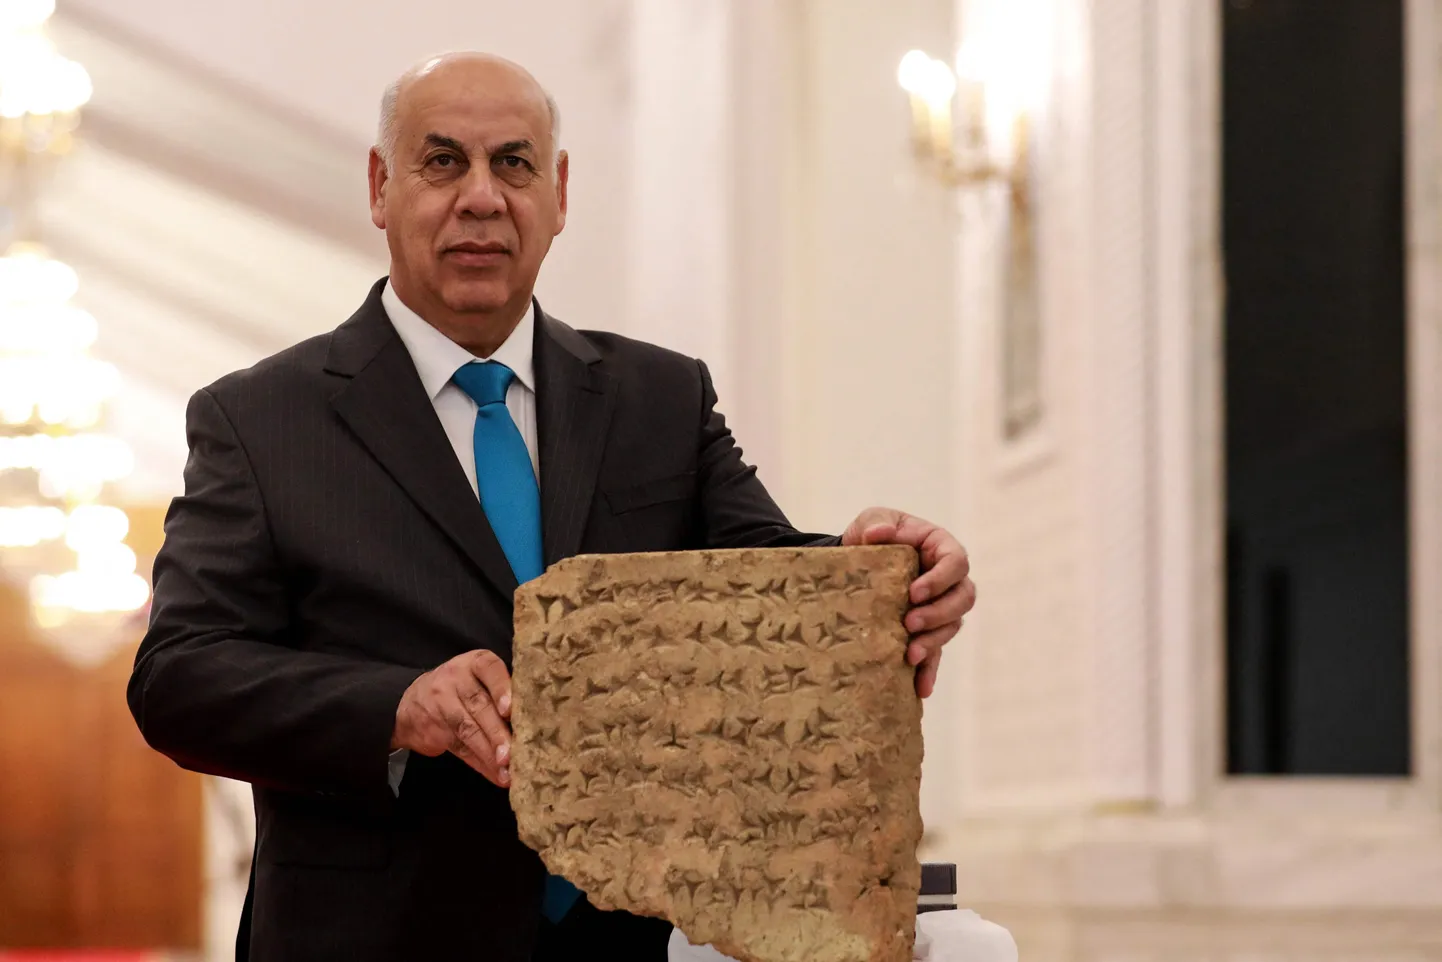 Iraagi kultuuriminister Ahmed Fakak al-Badrani esitleb 2800-aastast kivitahvlit, mille tema riik sai tagasi Itaalialt.